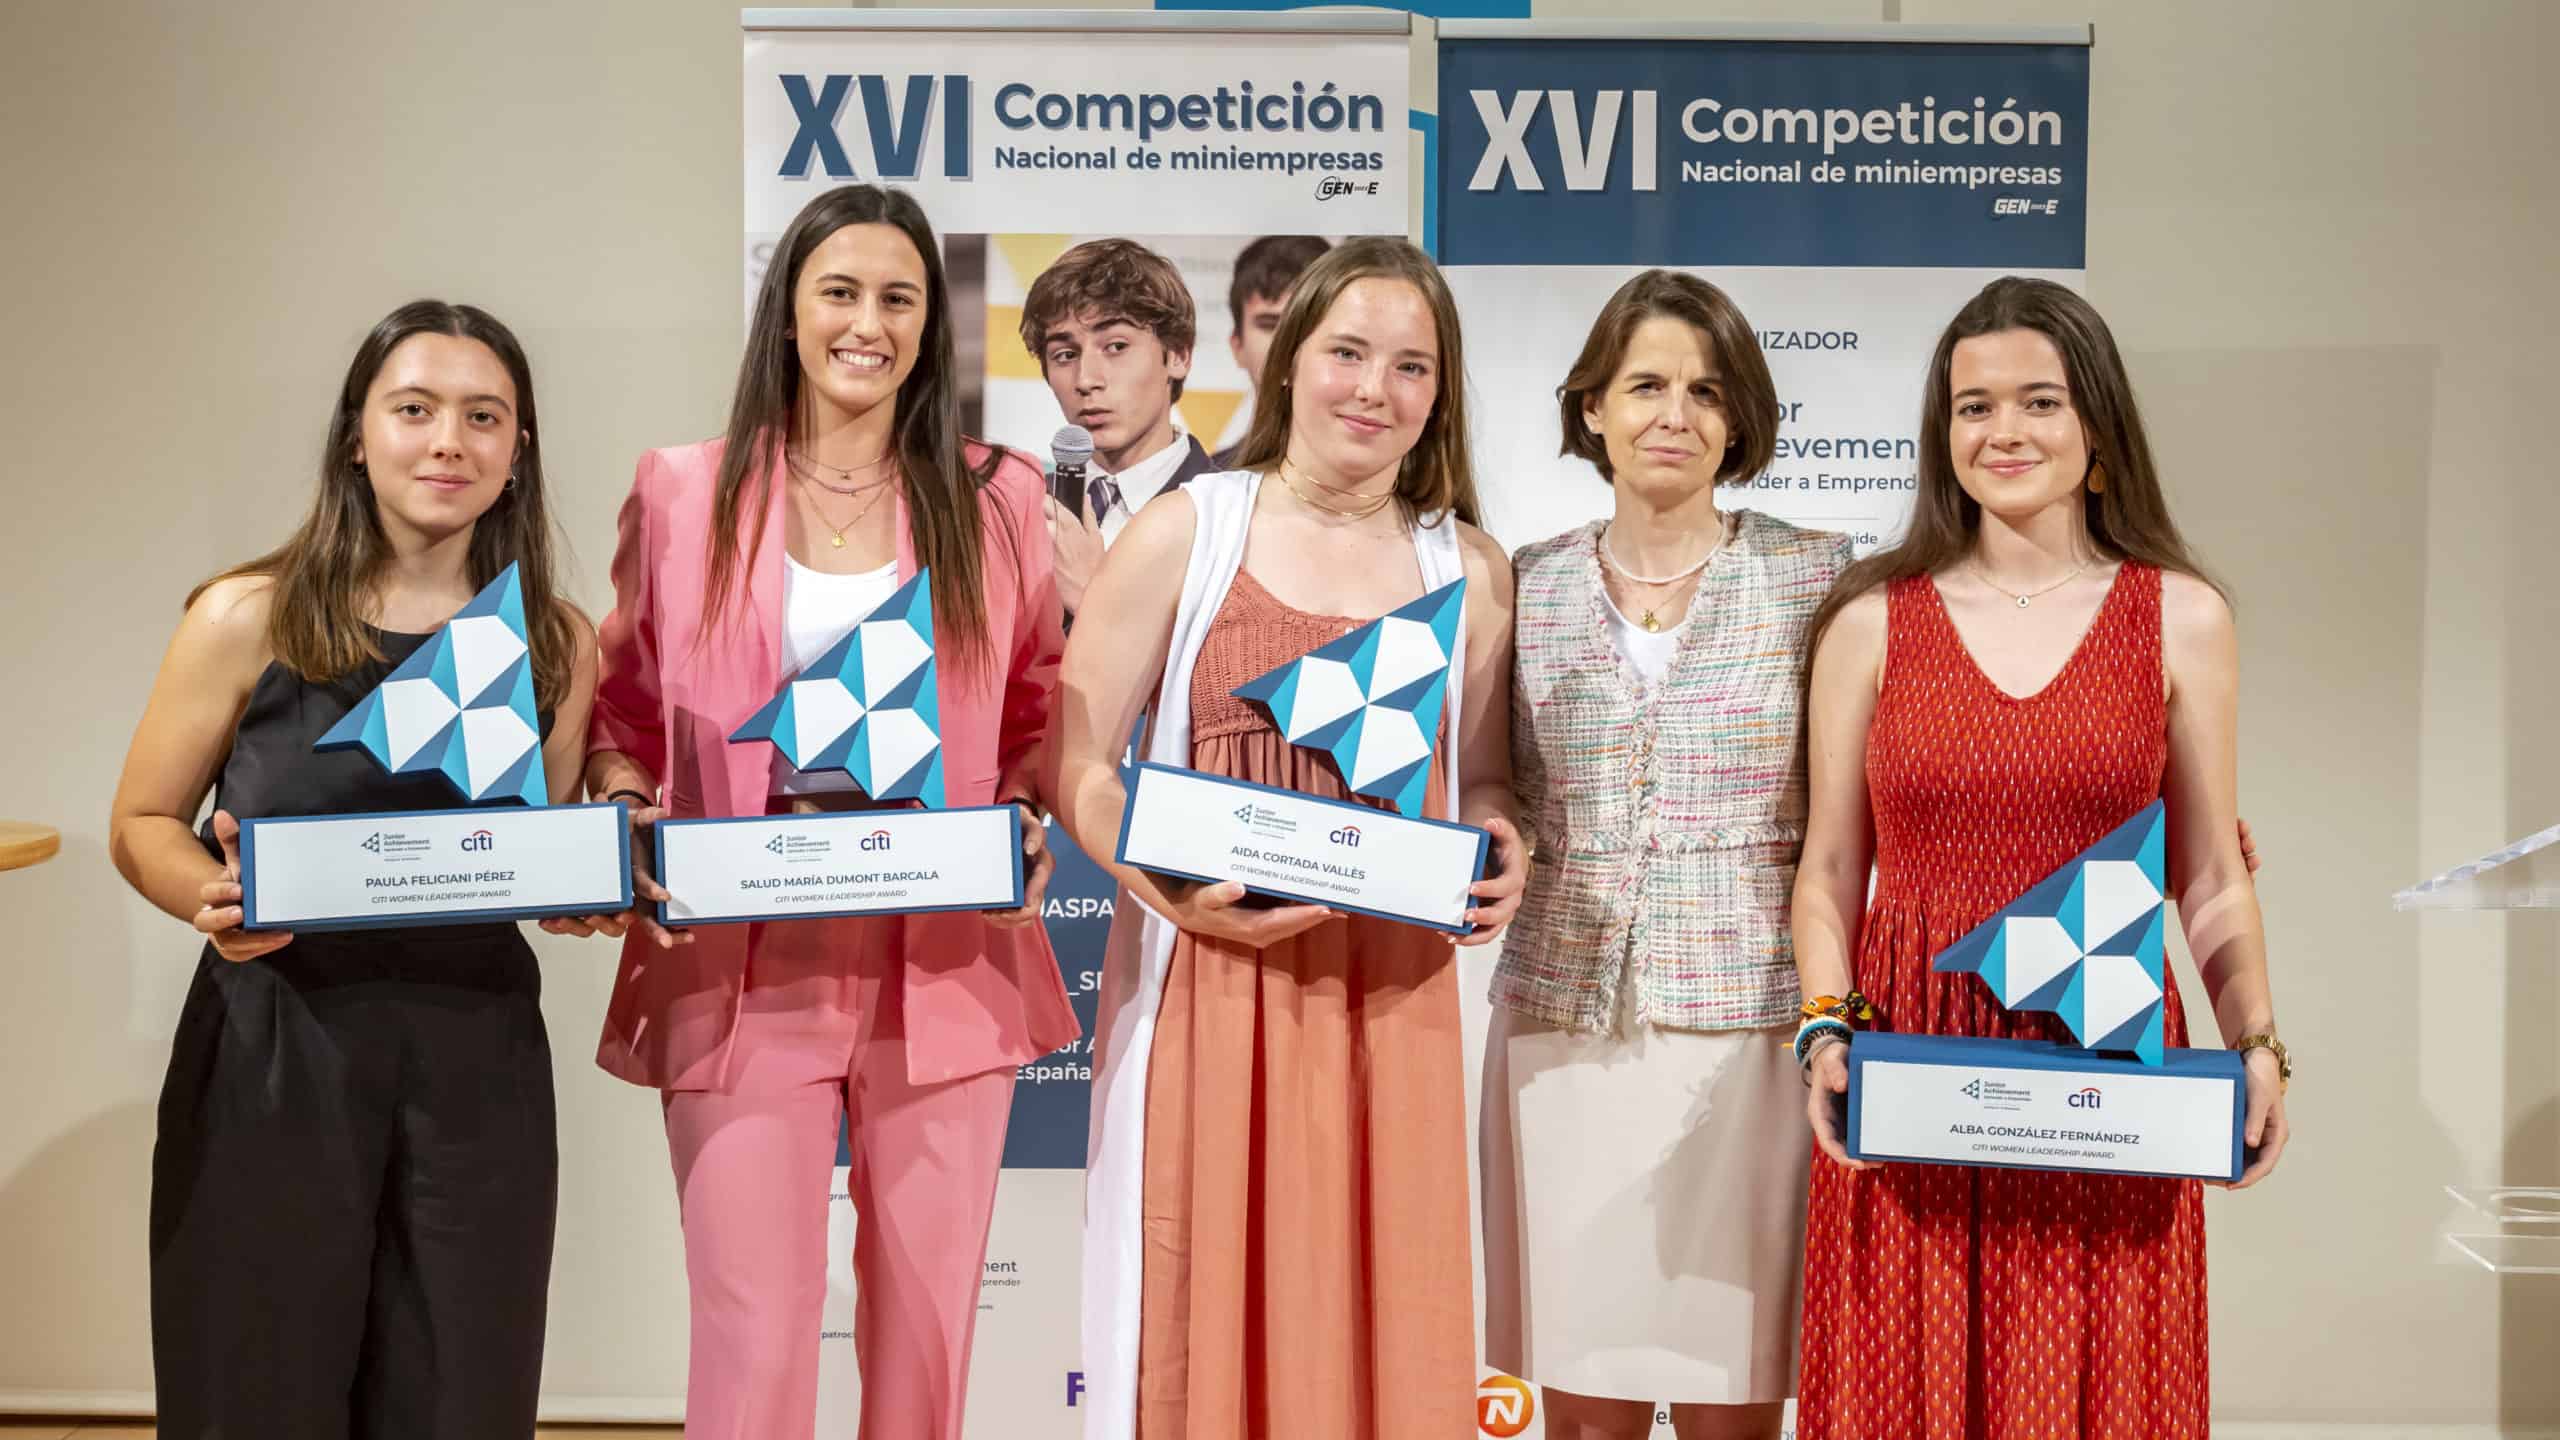 Citi Women Leadership Award empodera a jóvenes para ser las protagonistas de su propia vida